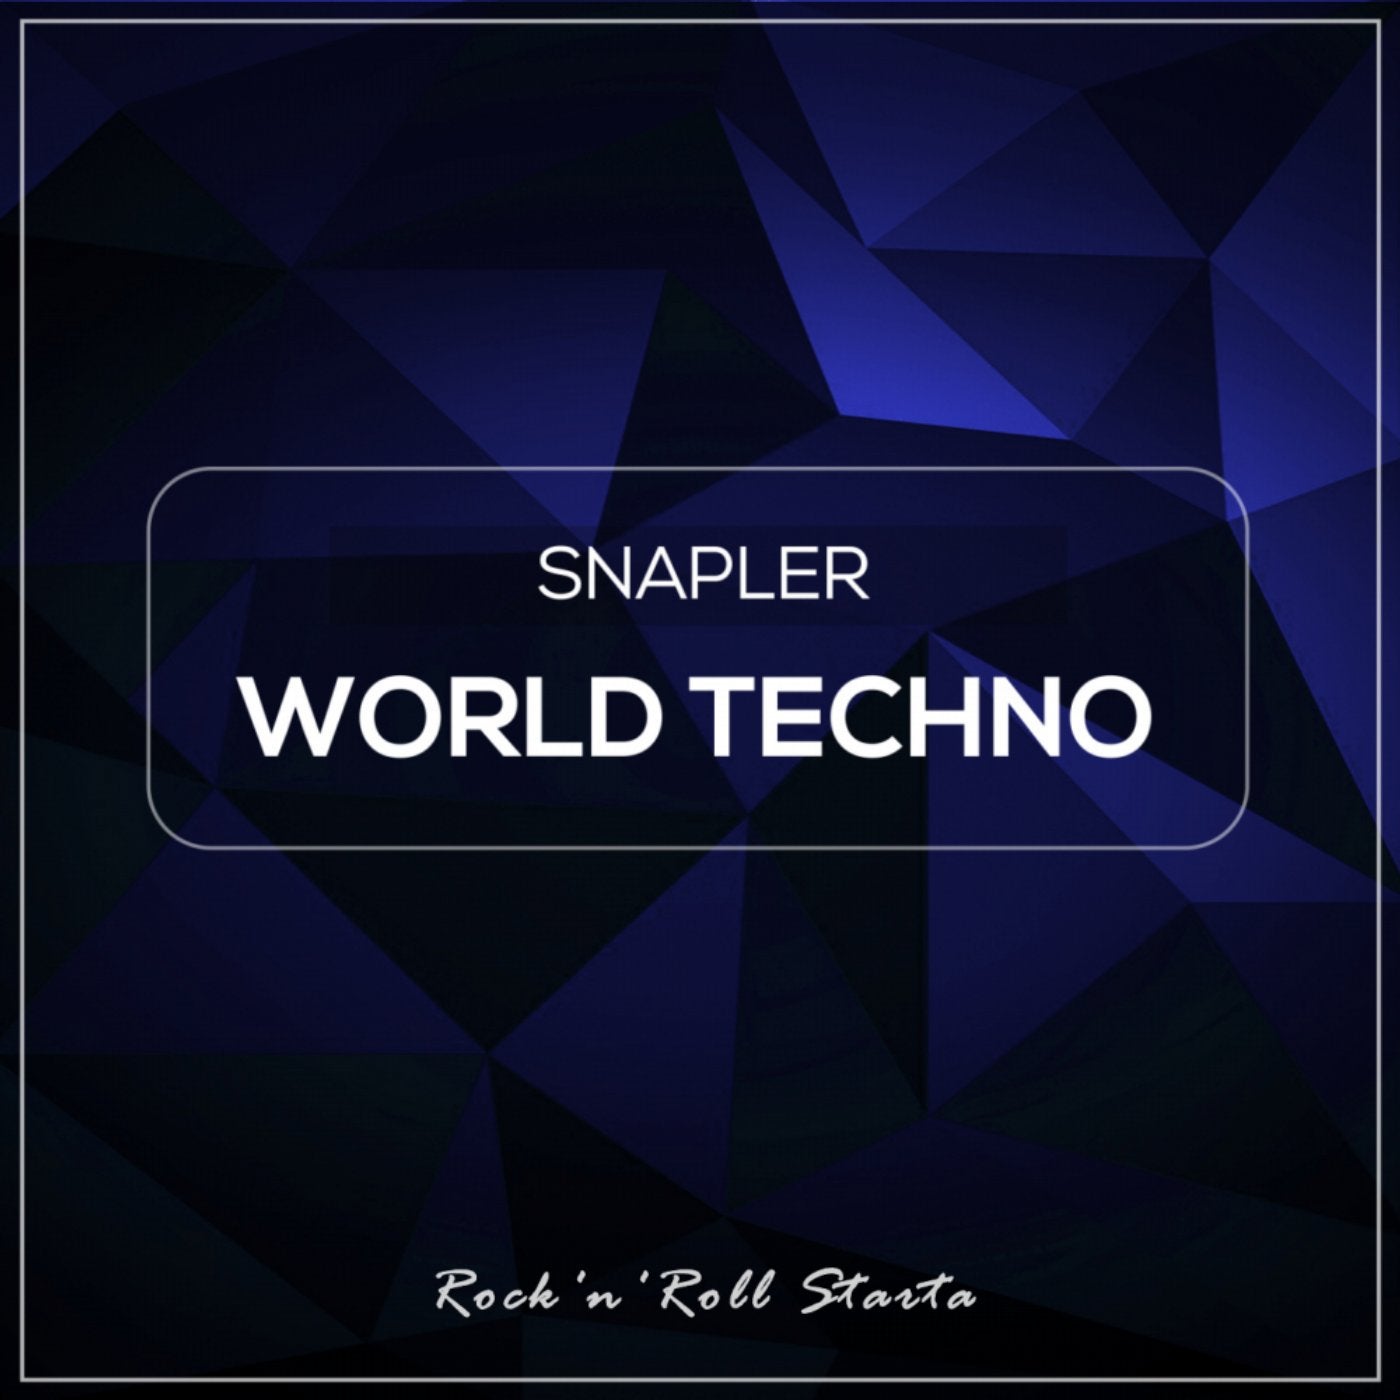 World Techno